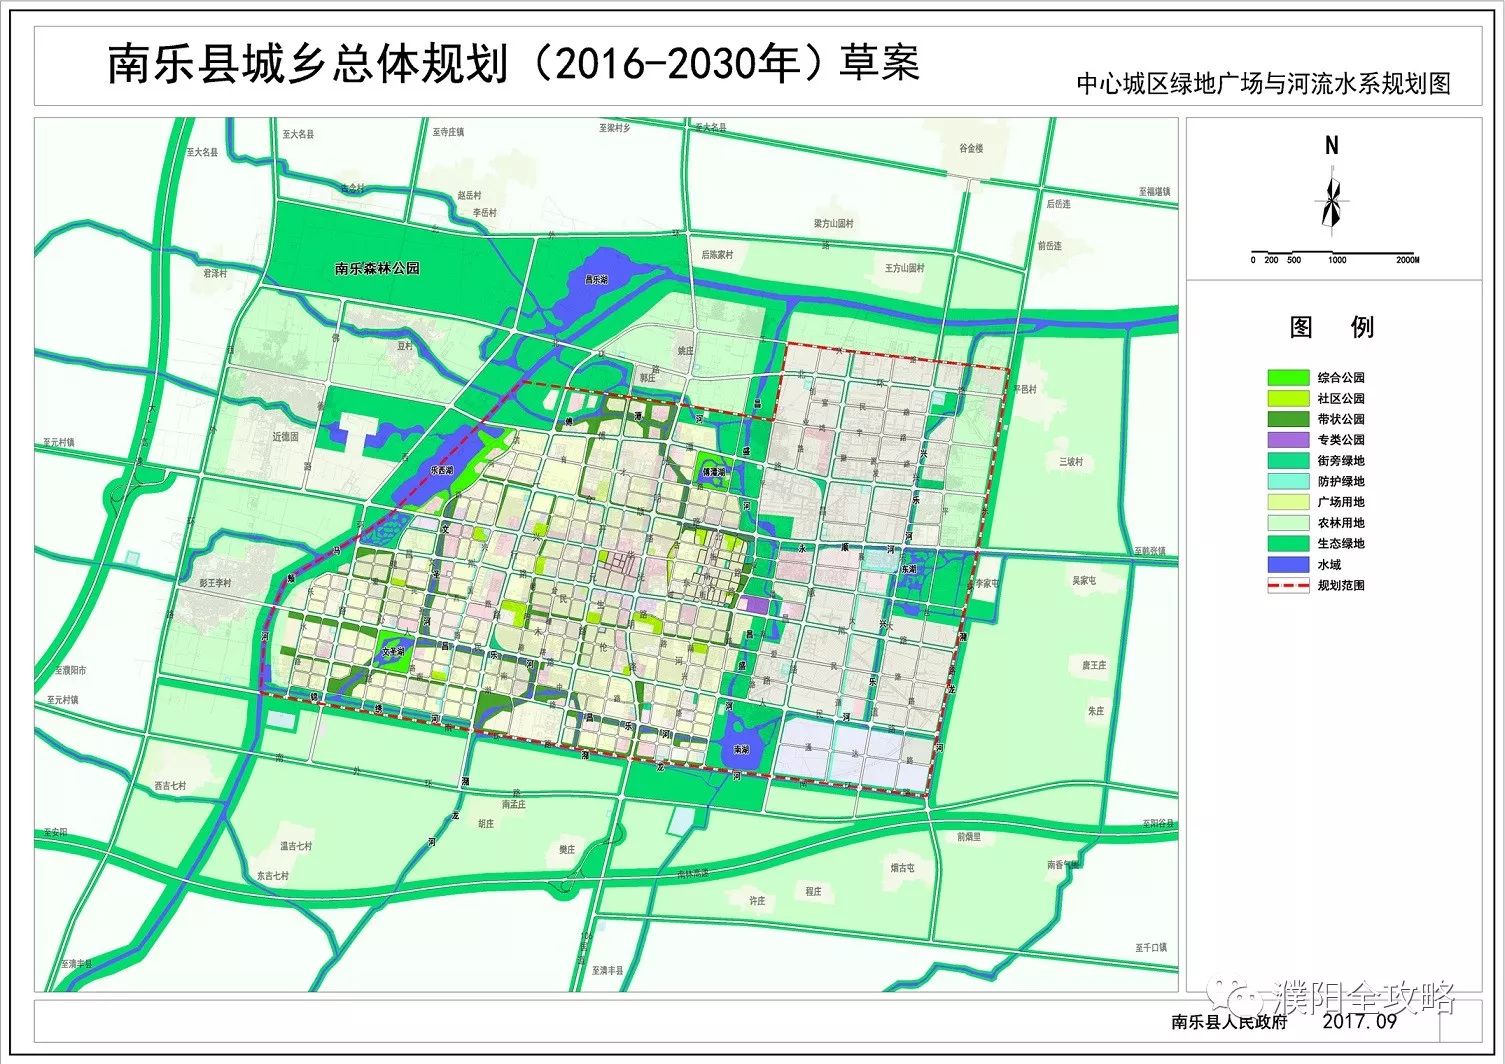 濮阳规划图2020年-2035图片